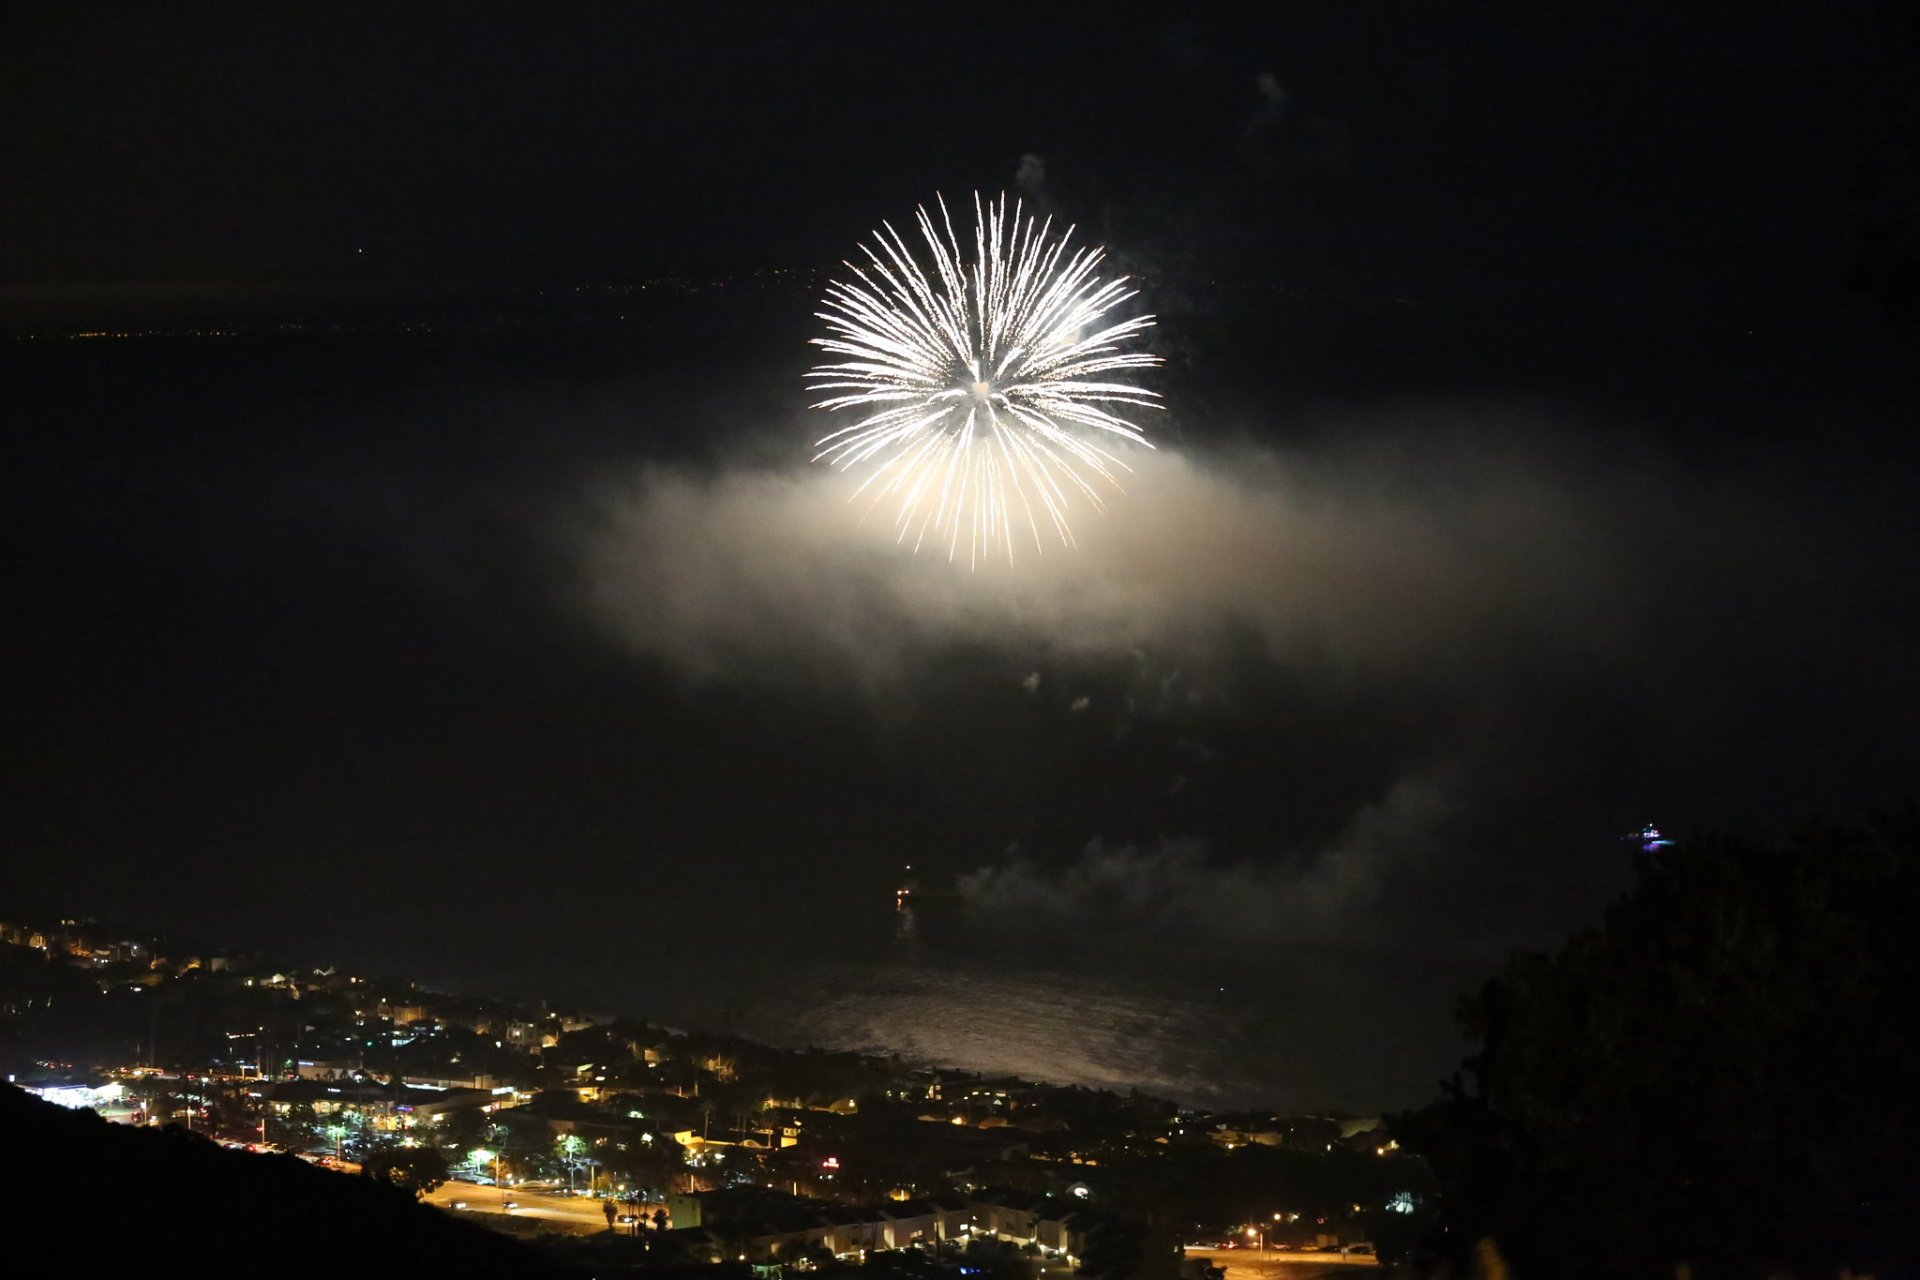 Malibu Wochenendaktivitäten & Feuerwerk am 4. Juli (Independence Day)